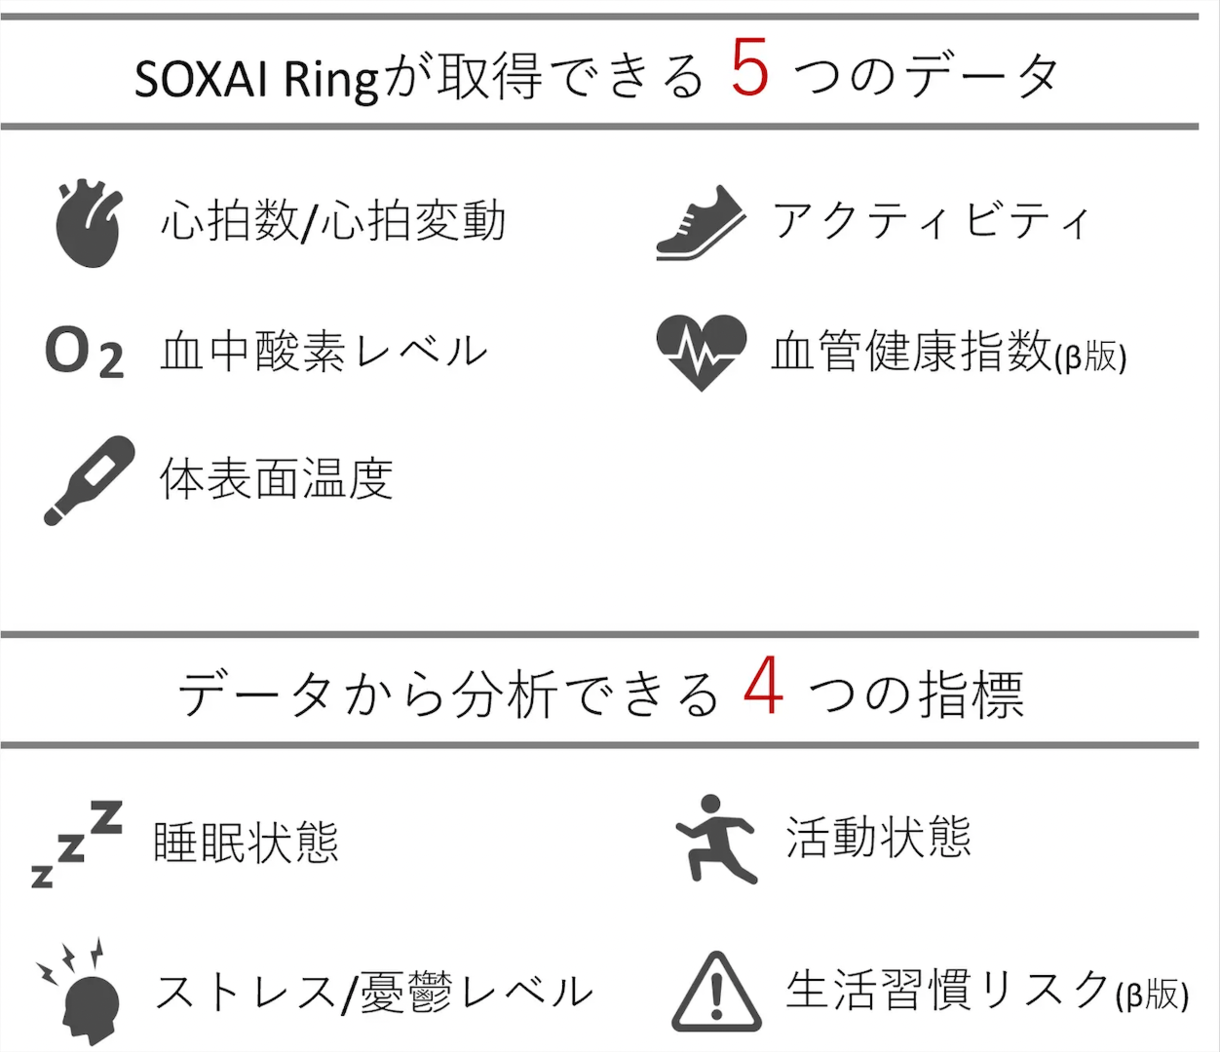 日本発スマートリング「SOXAI Ring」が開始から1分たたずに目標金額を